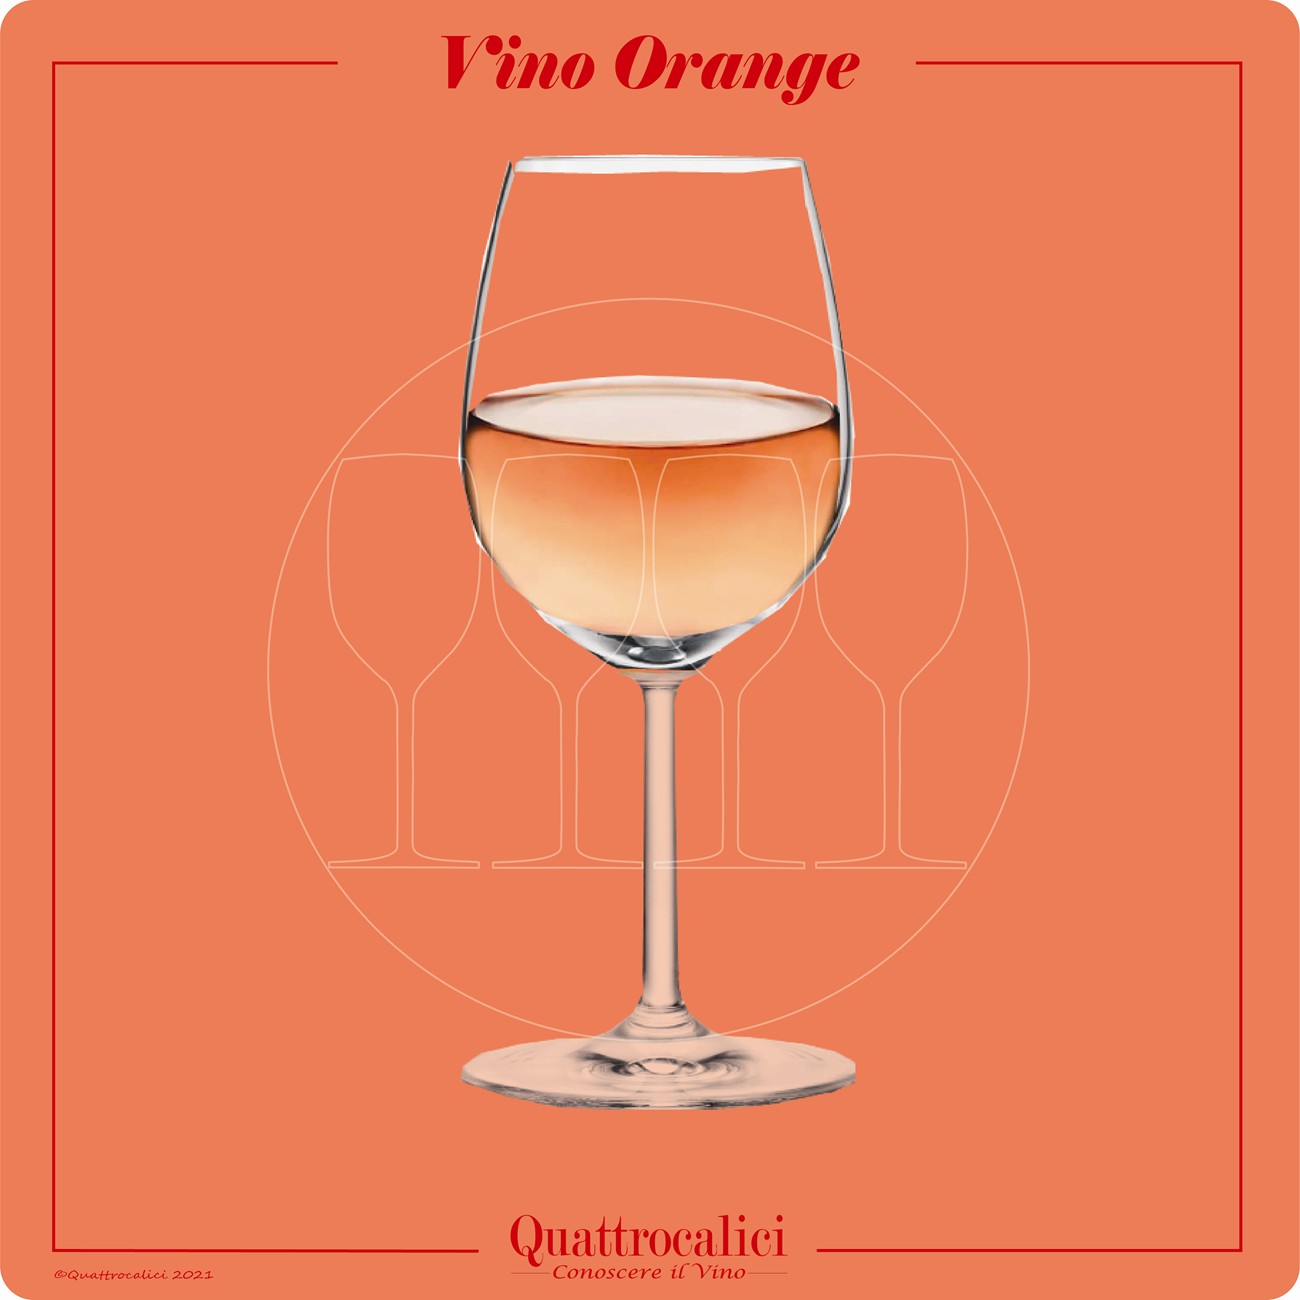 orange wines